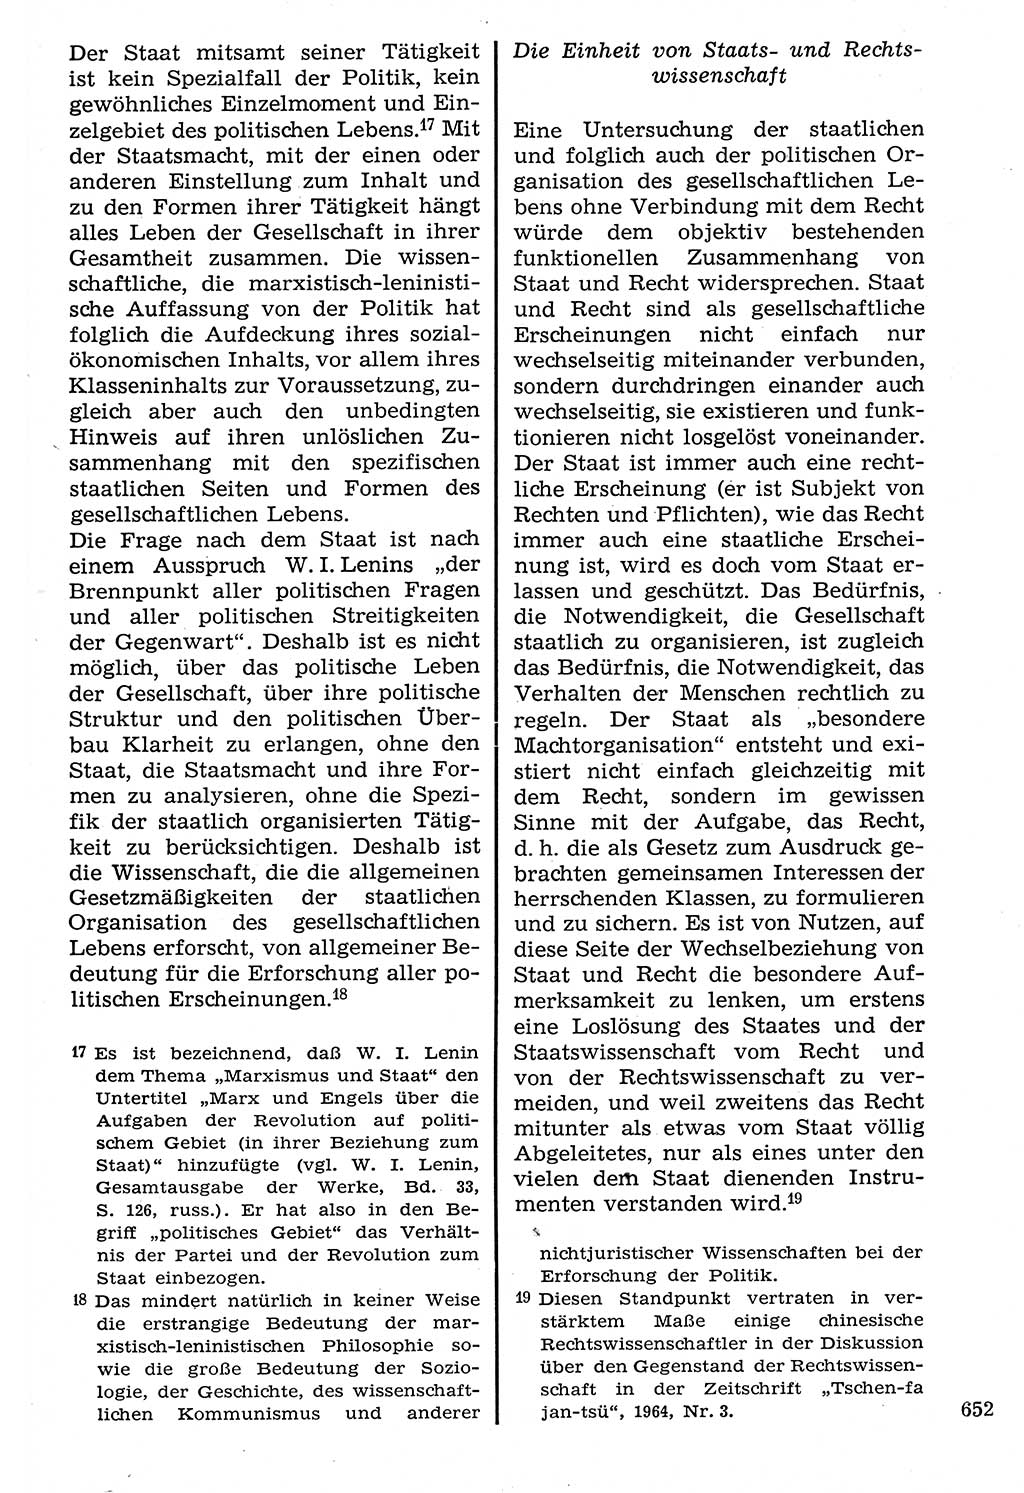 Staat und Recht (StuR), 17. Jahrgang [Deutsche Demokratische Republik (DDR)] 1968, Seite 652 (StuR DDR 1968, S. 652)